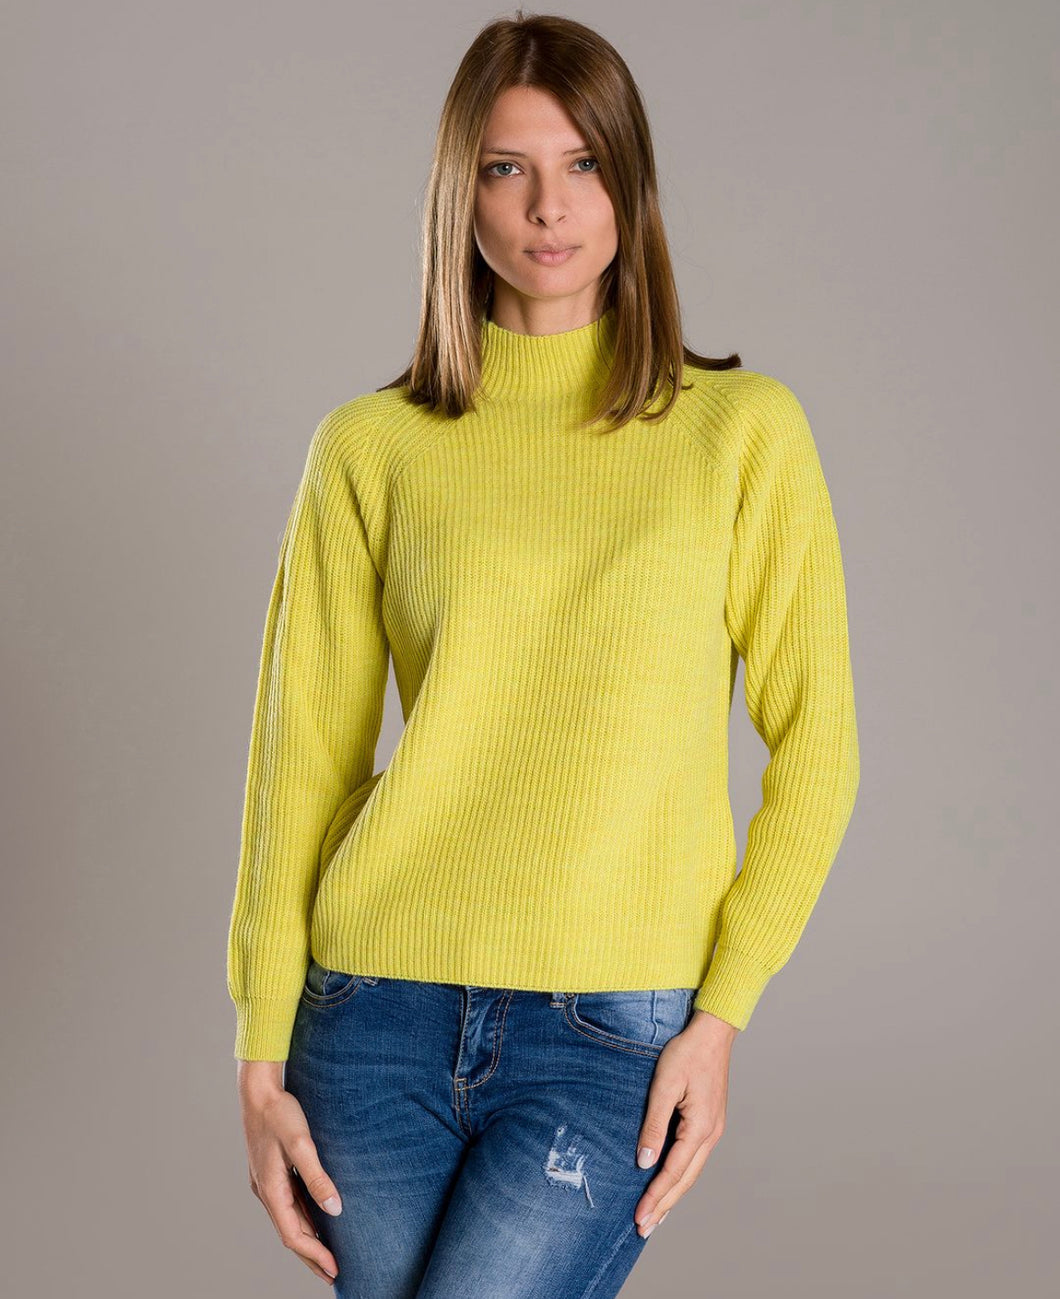 Cashmere Company maglia lana donna giallo lime dolcevita costa Inglese